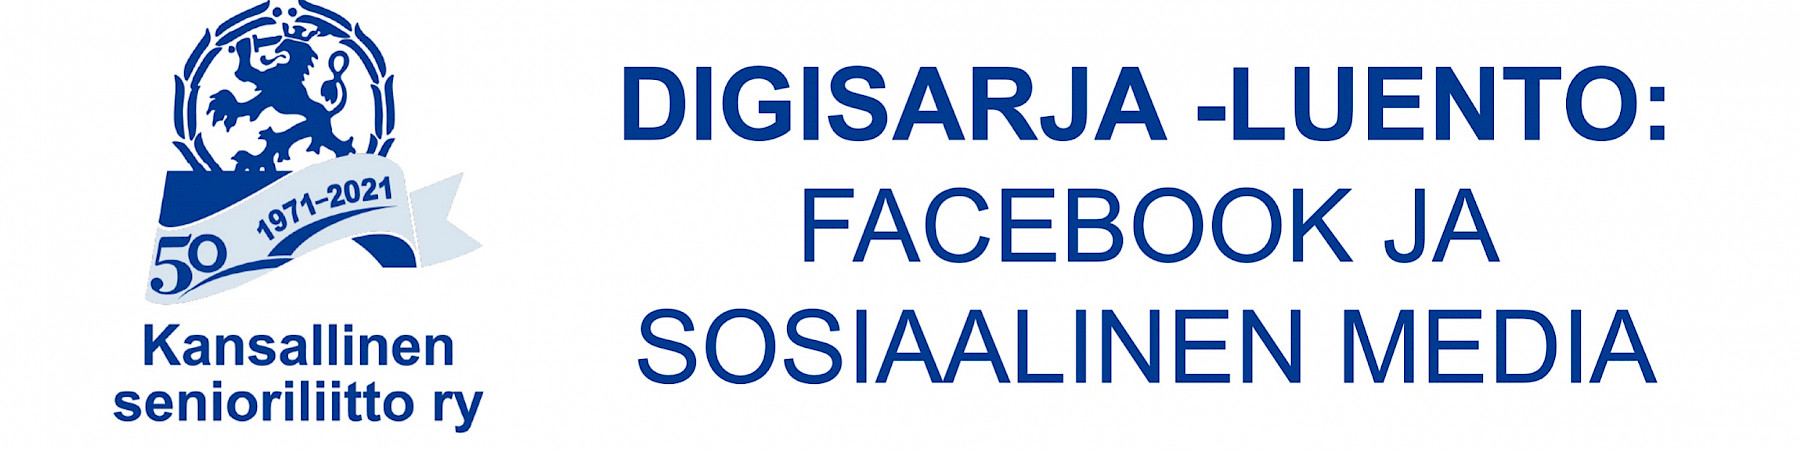 Facebook ja sosiaalinen media